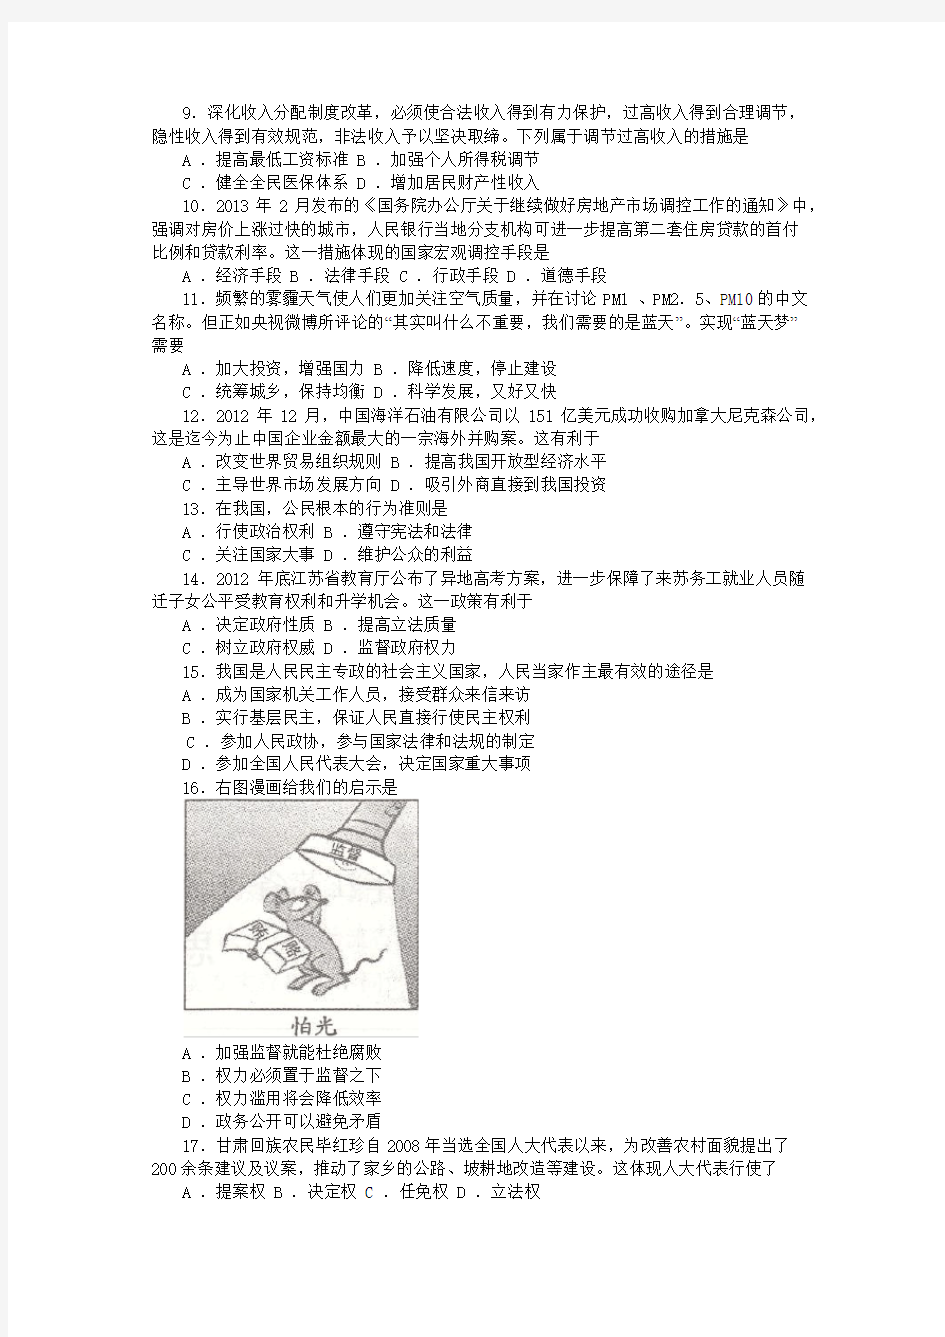 2013年江苏省普通高中学业水平测试(必修科目) 试卷政治及答案